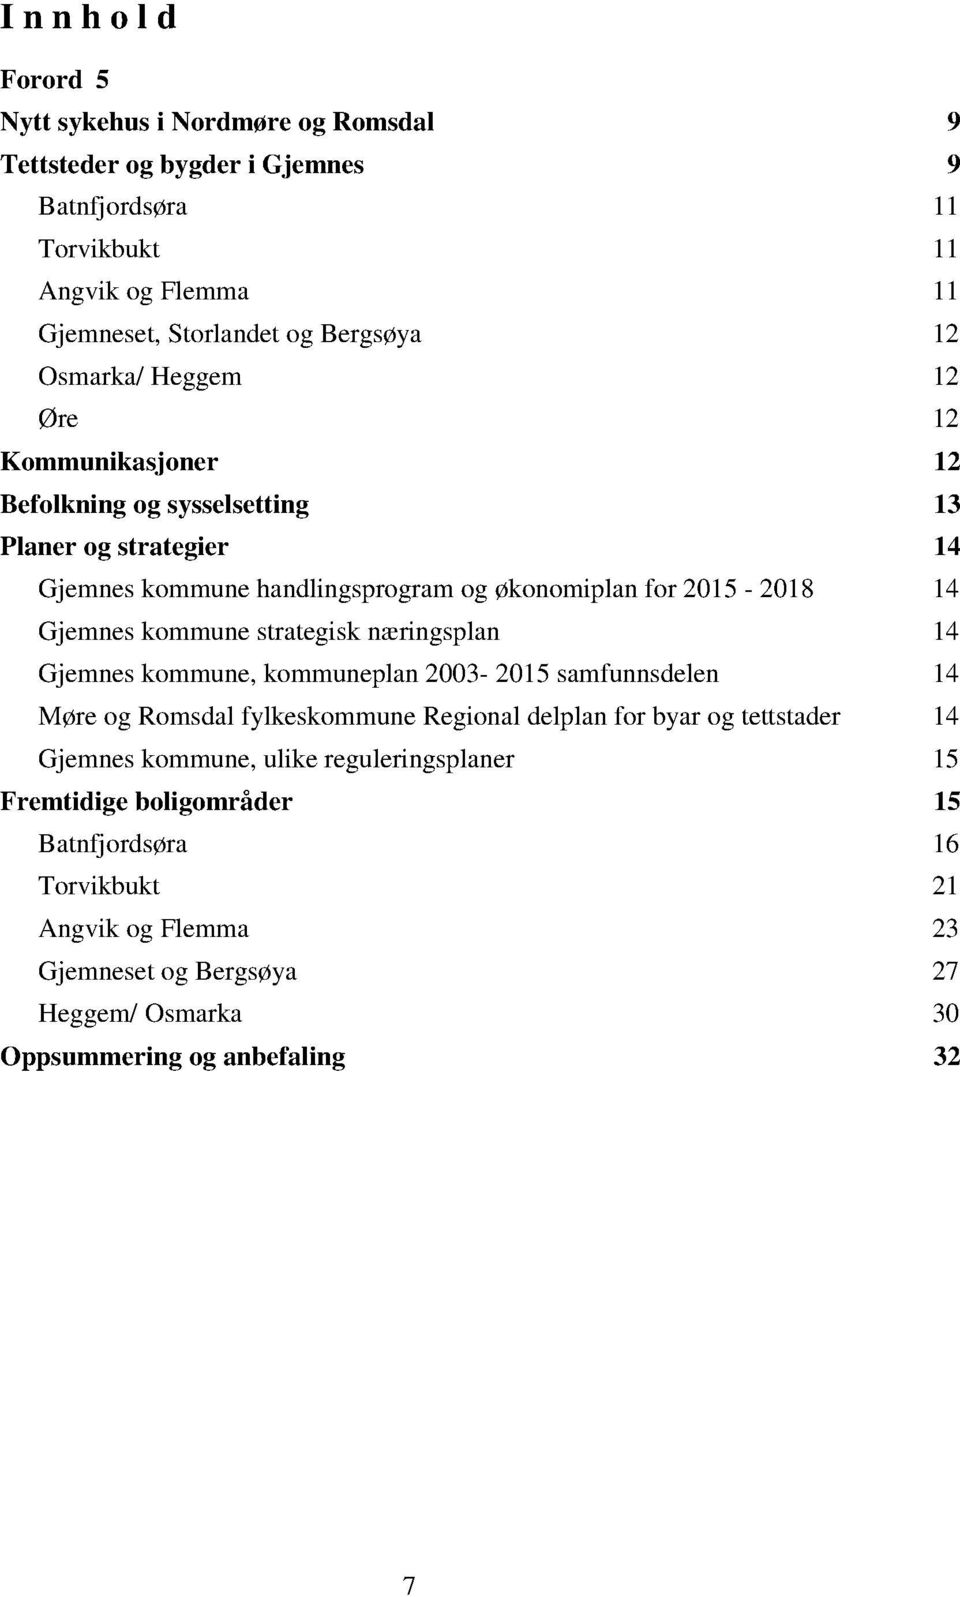 Gjemneskommunestrategisknæringsplan 14 Gjemneskommune,kommuneplan2003-2015samfunnsdel en 14 Møreog RomsdalfylkeskommuneRegionaldelplanfor byarog tettstader 14